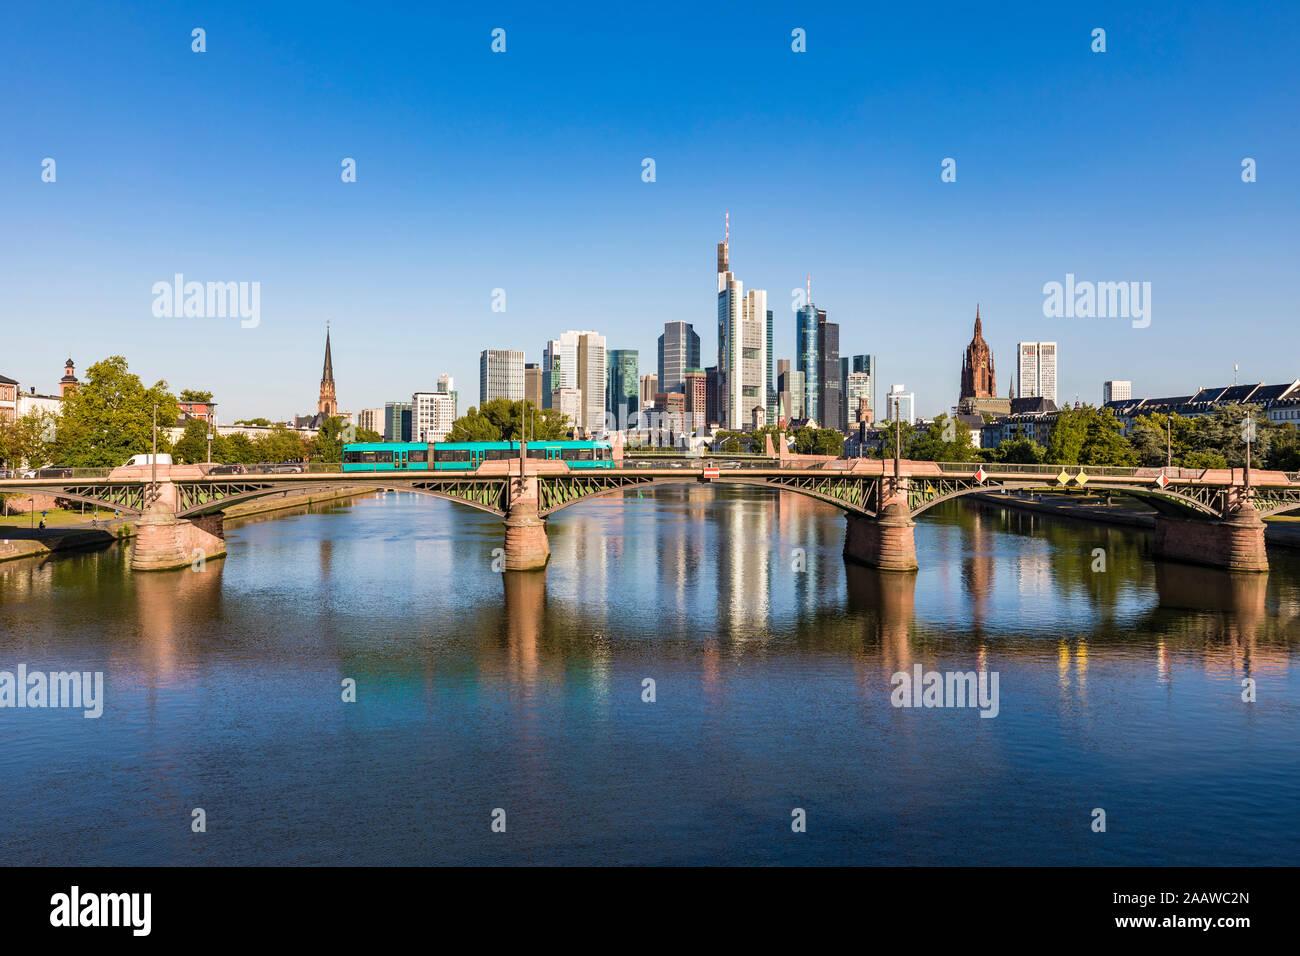 Ignatz Bubis Ponte sul Fiume Main contro il cielo blu e chiaro a Francoforte, Germania Foto Stock